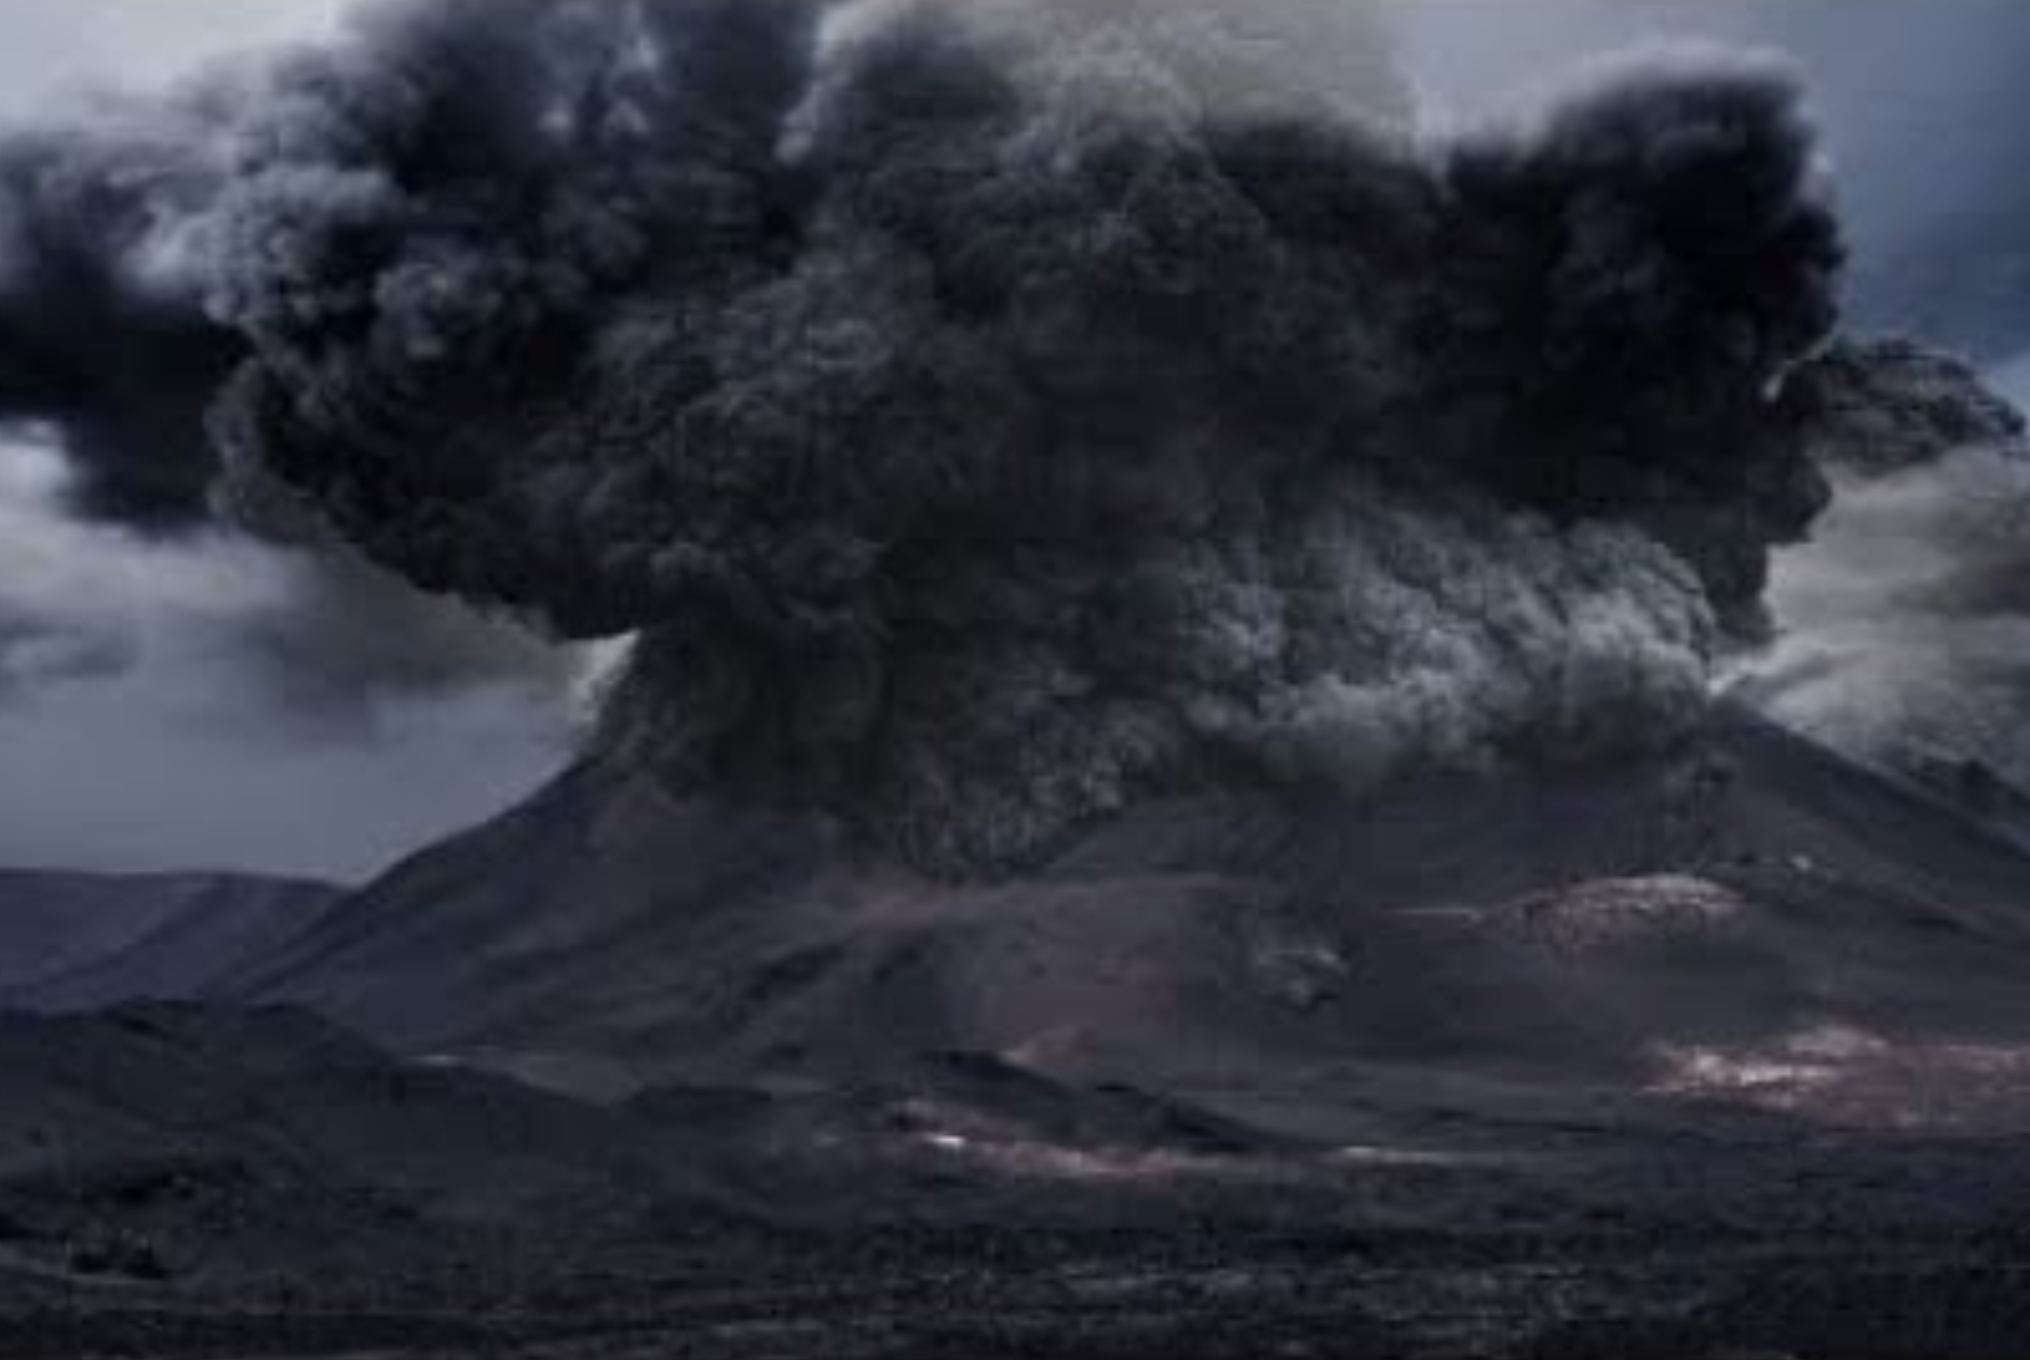 Τουνγκούσκα: Η μυστηριώδης έκρηξη που ισοπέδωσε χιλιόμετρα δάσους σε λίγα δευτερόλεπτα και οι θεωρίες συνωμοσίας για εξωγήινους